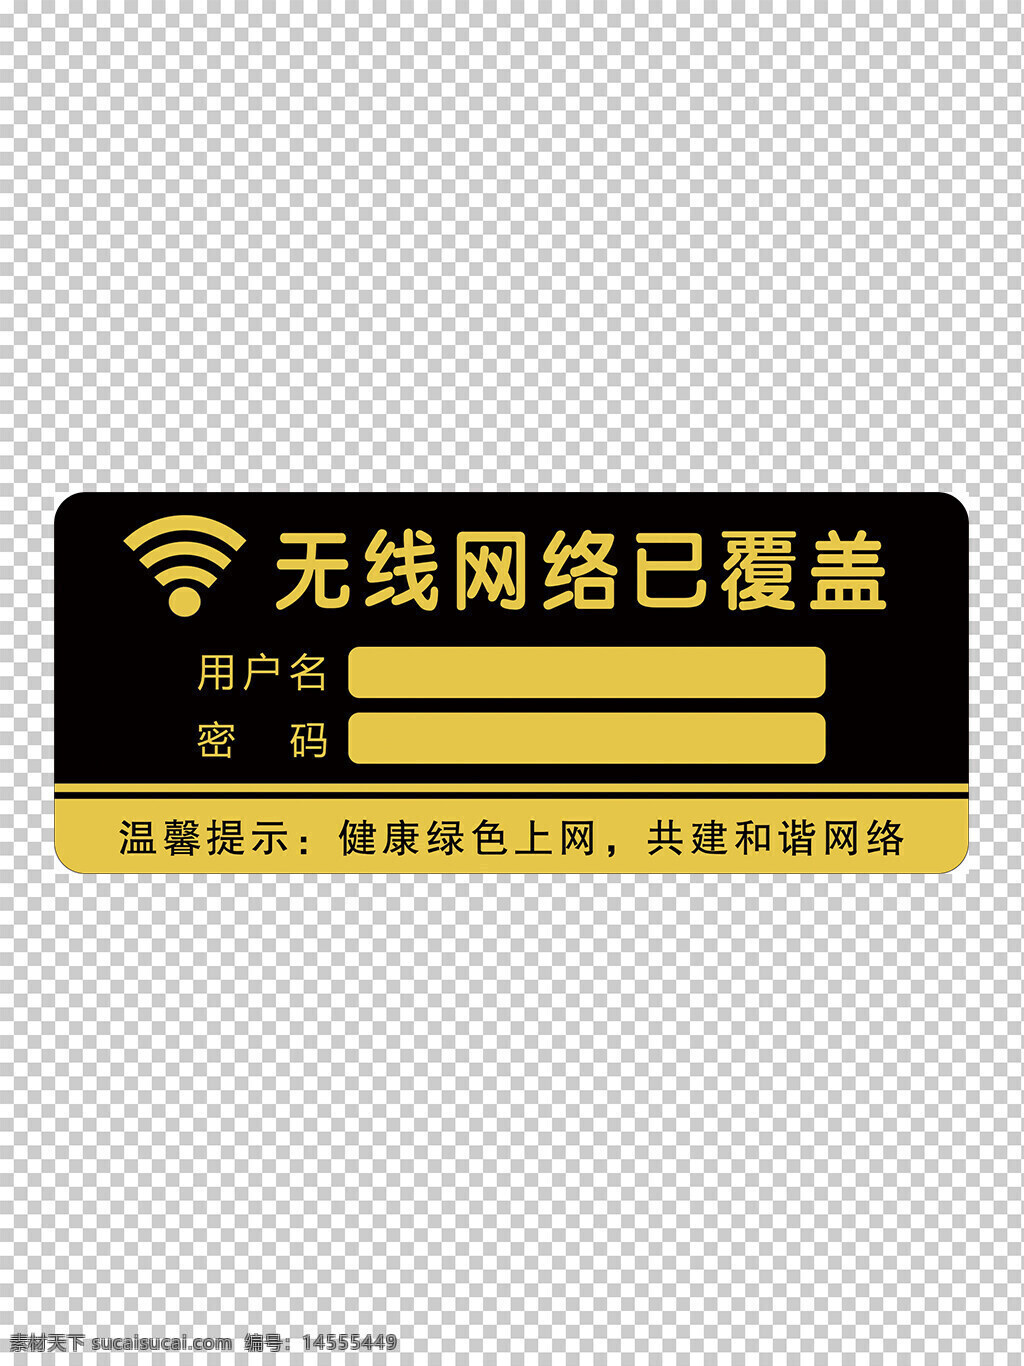 wifi标志牌 长安无线网 无线网标志 wifi标志 无线网络 设计 广告设计 500dpi psd